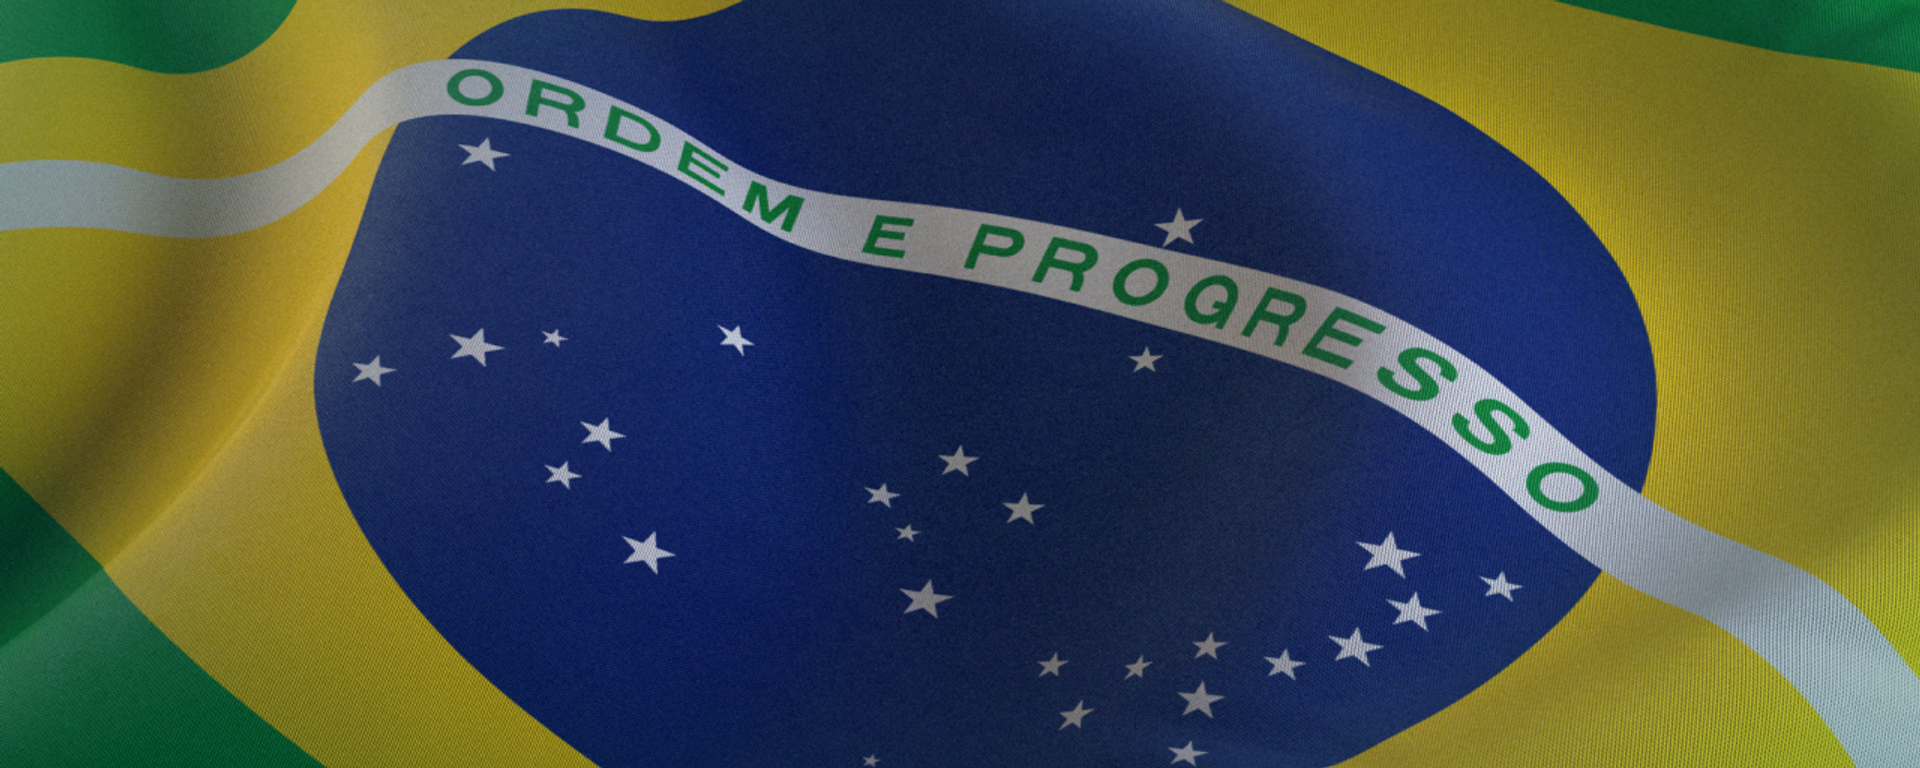 Liderando G20: conheça os planos do Brasil na presidência da organização internacional - Sputnik Brasil, 1920, 13.12.2023